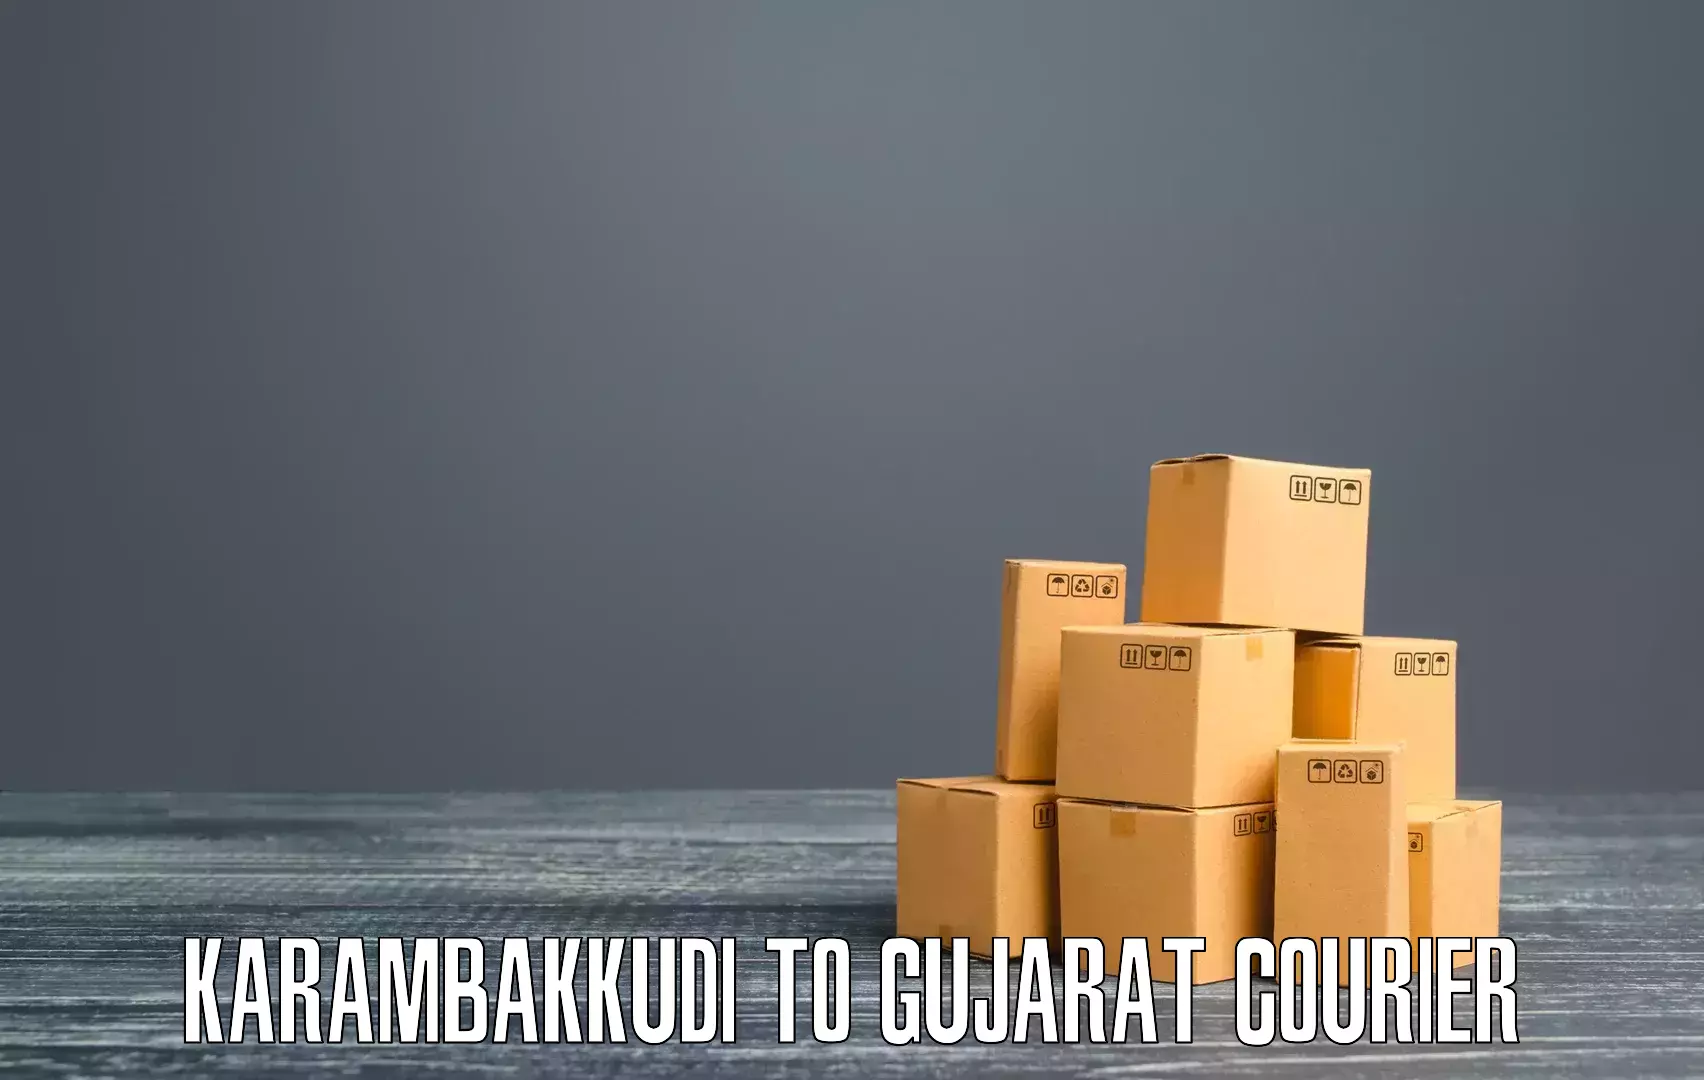 Customized delivery options Karambakkudi to Gondal